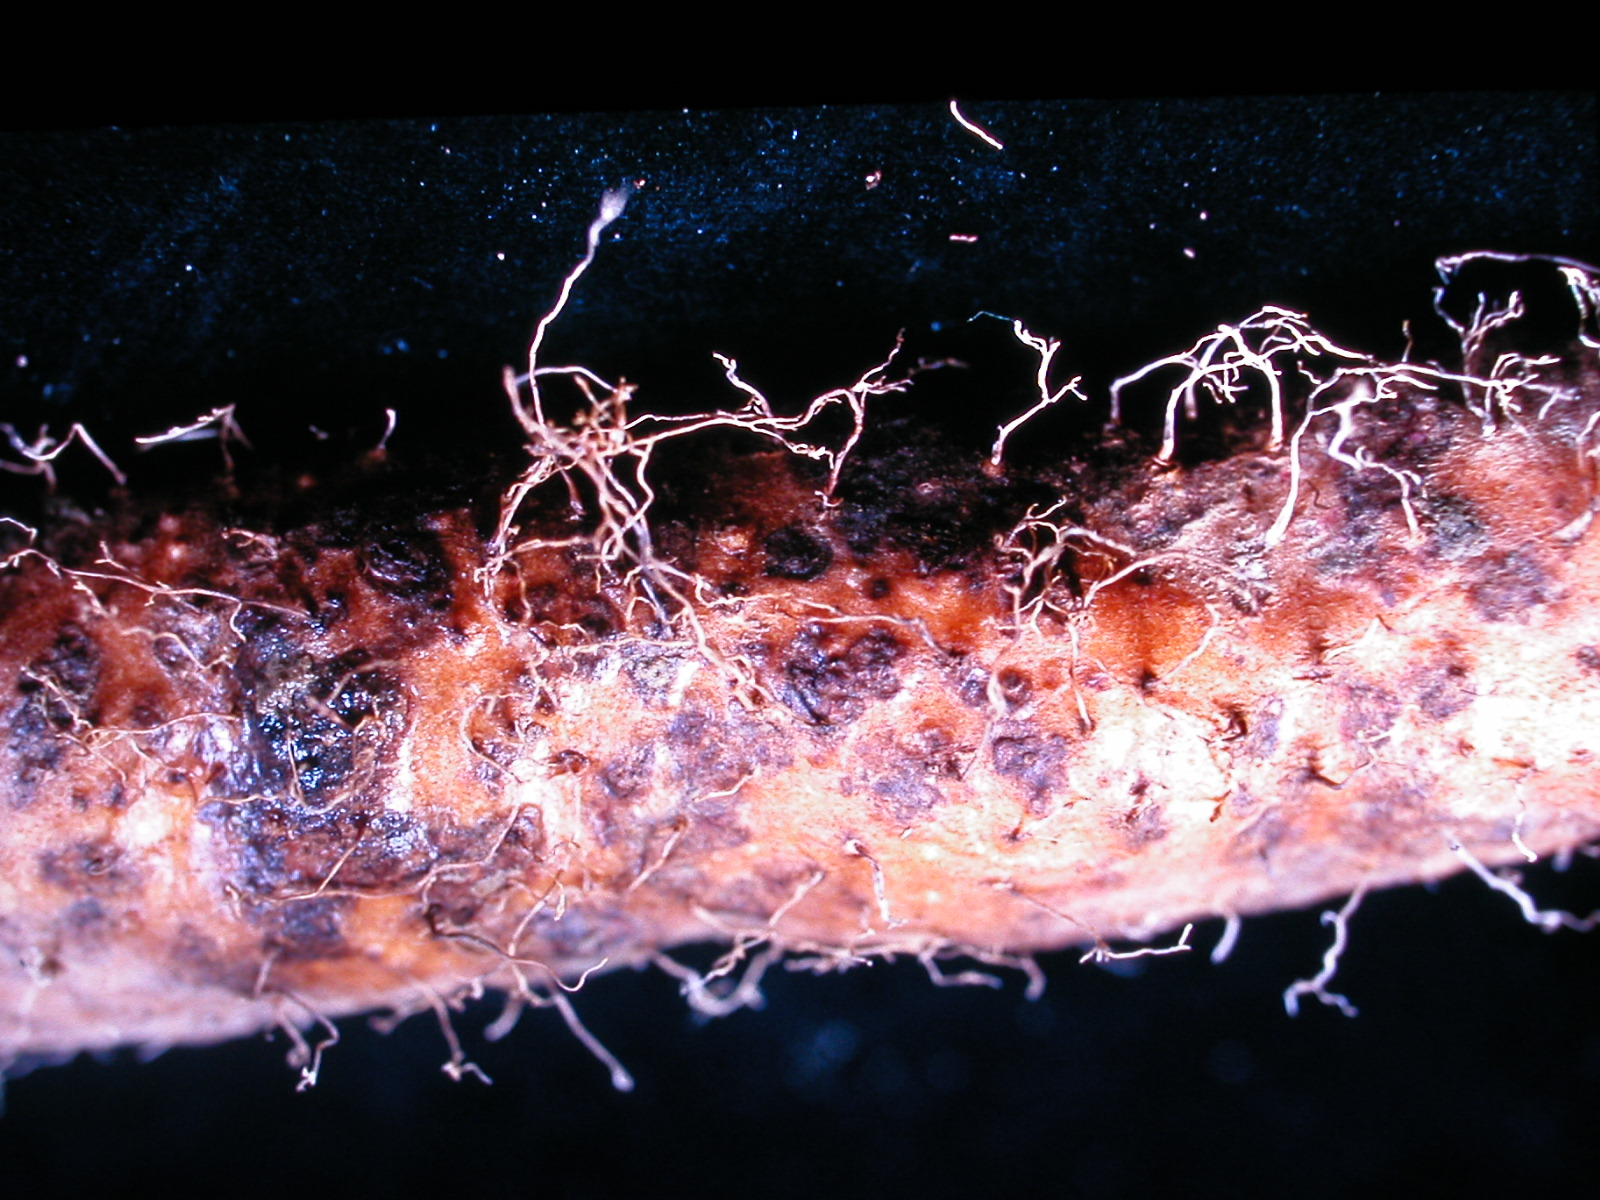 圖2. 山藥薯塊表面之黑色斑塊(左)為根腐線蟲感染，瘤狀凸起(右) 為根瘤線蟲感染，均不可當作種薯